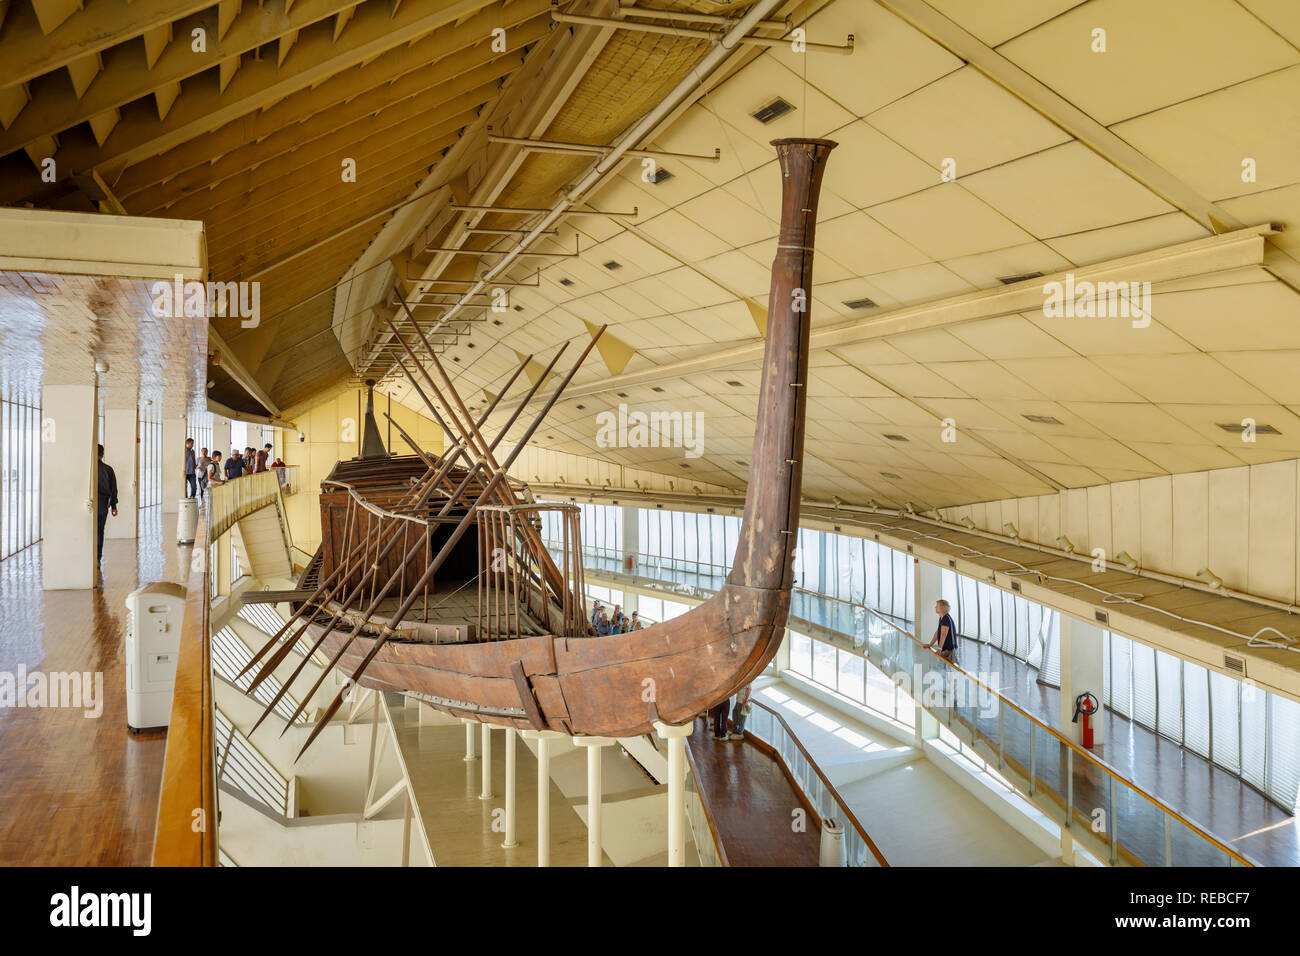 Khufus Schiff, ein intaktes Schiff in voller Größe aus dem Alten Ägypten im Solarboot Museum neben der Großen Pyramide des Cheops, Giza Plateau, Kairo, Ägypten Stockfoto